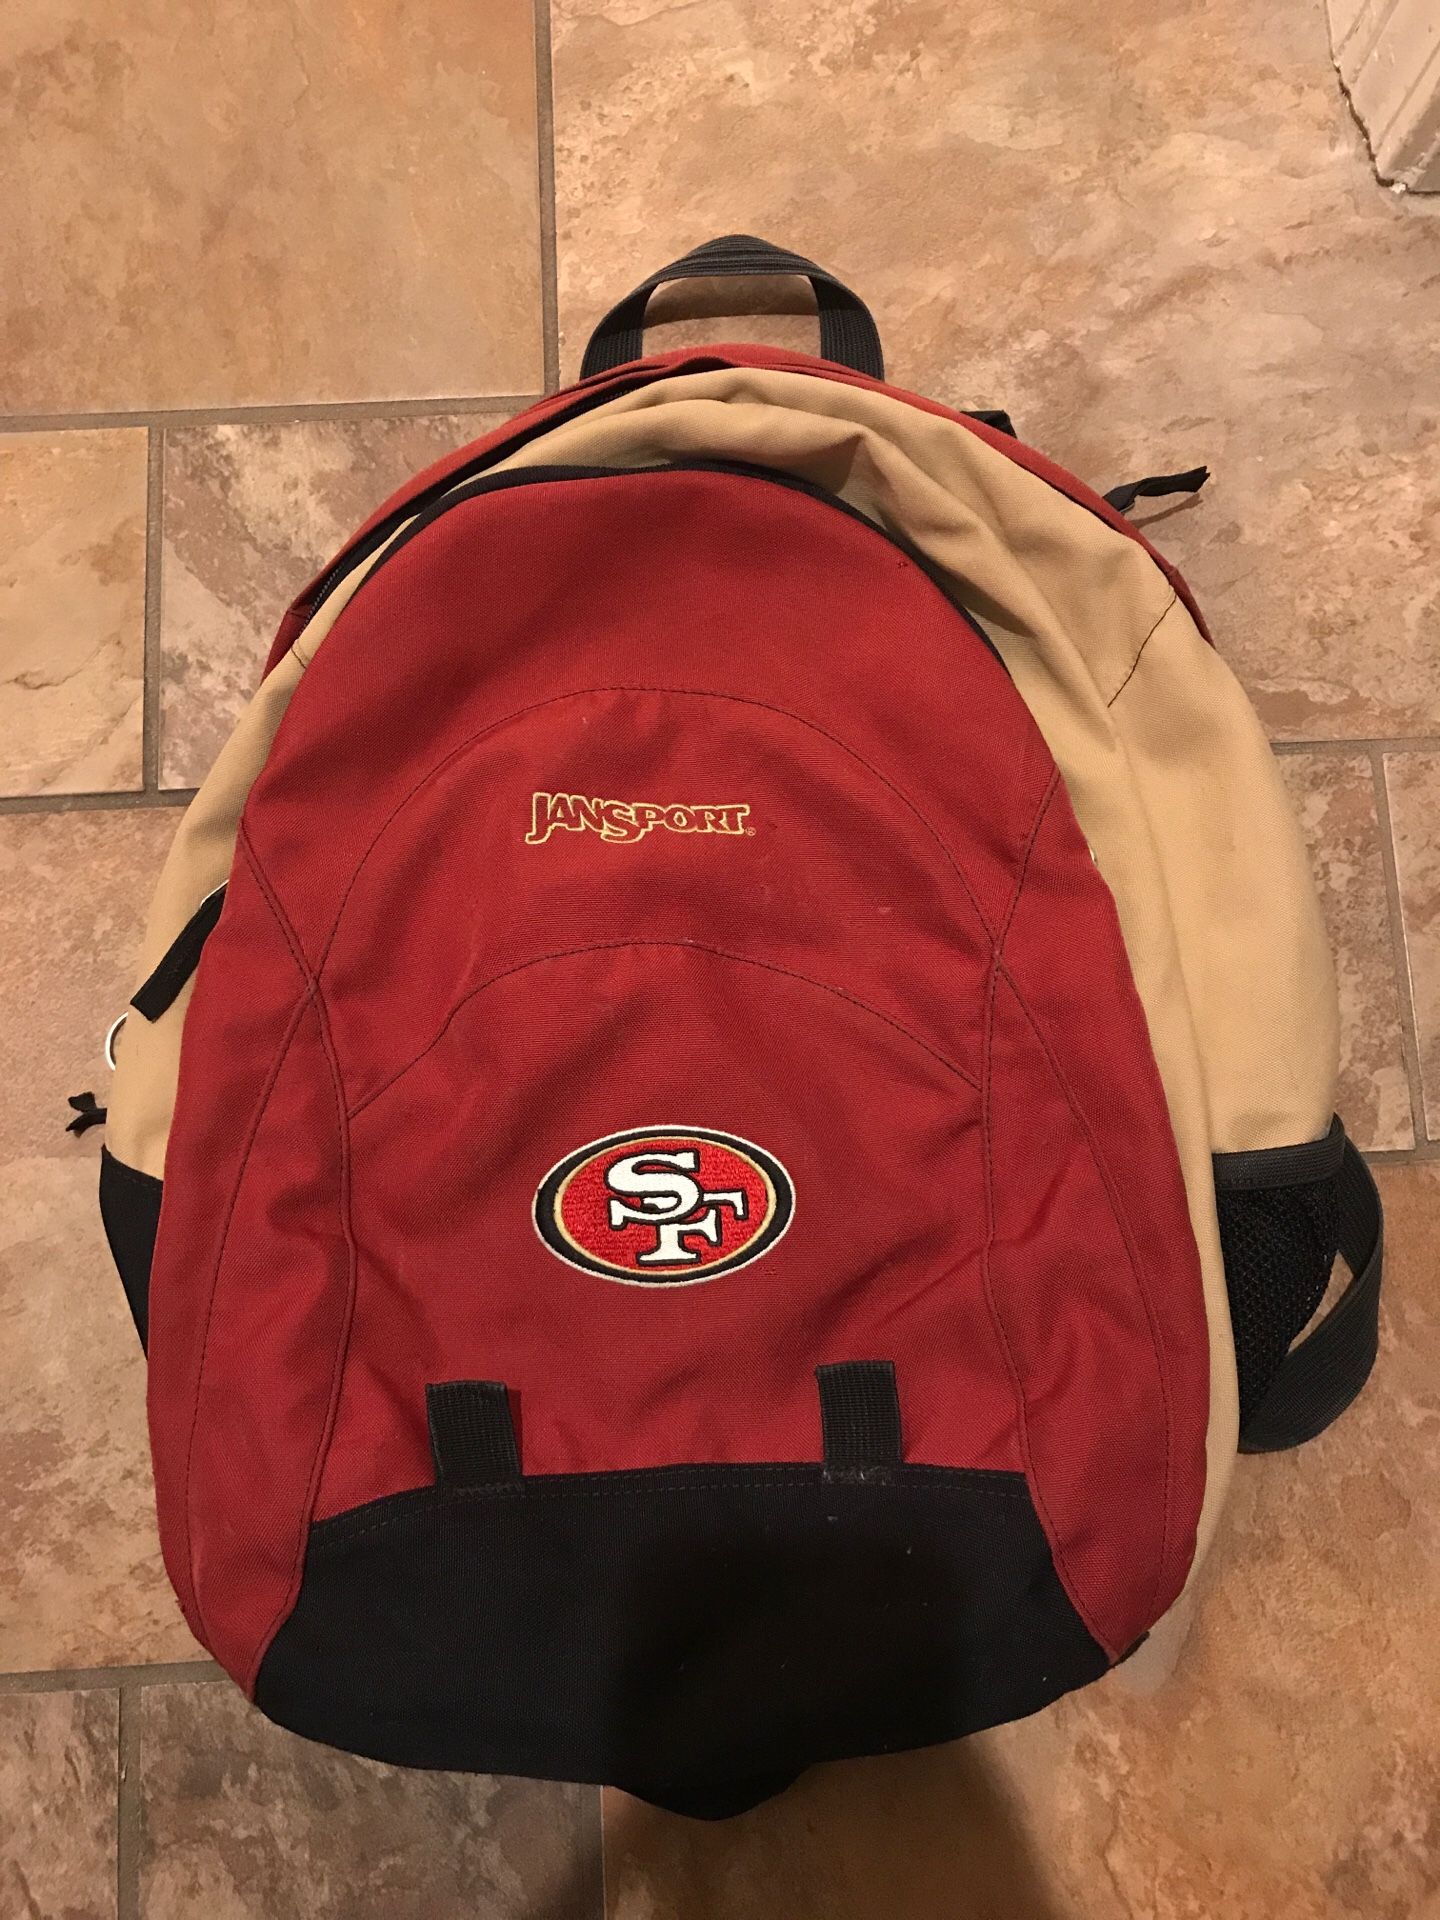 Jansport sf 49ers backpack